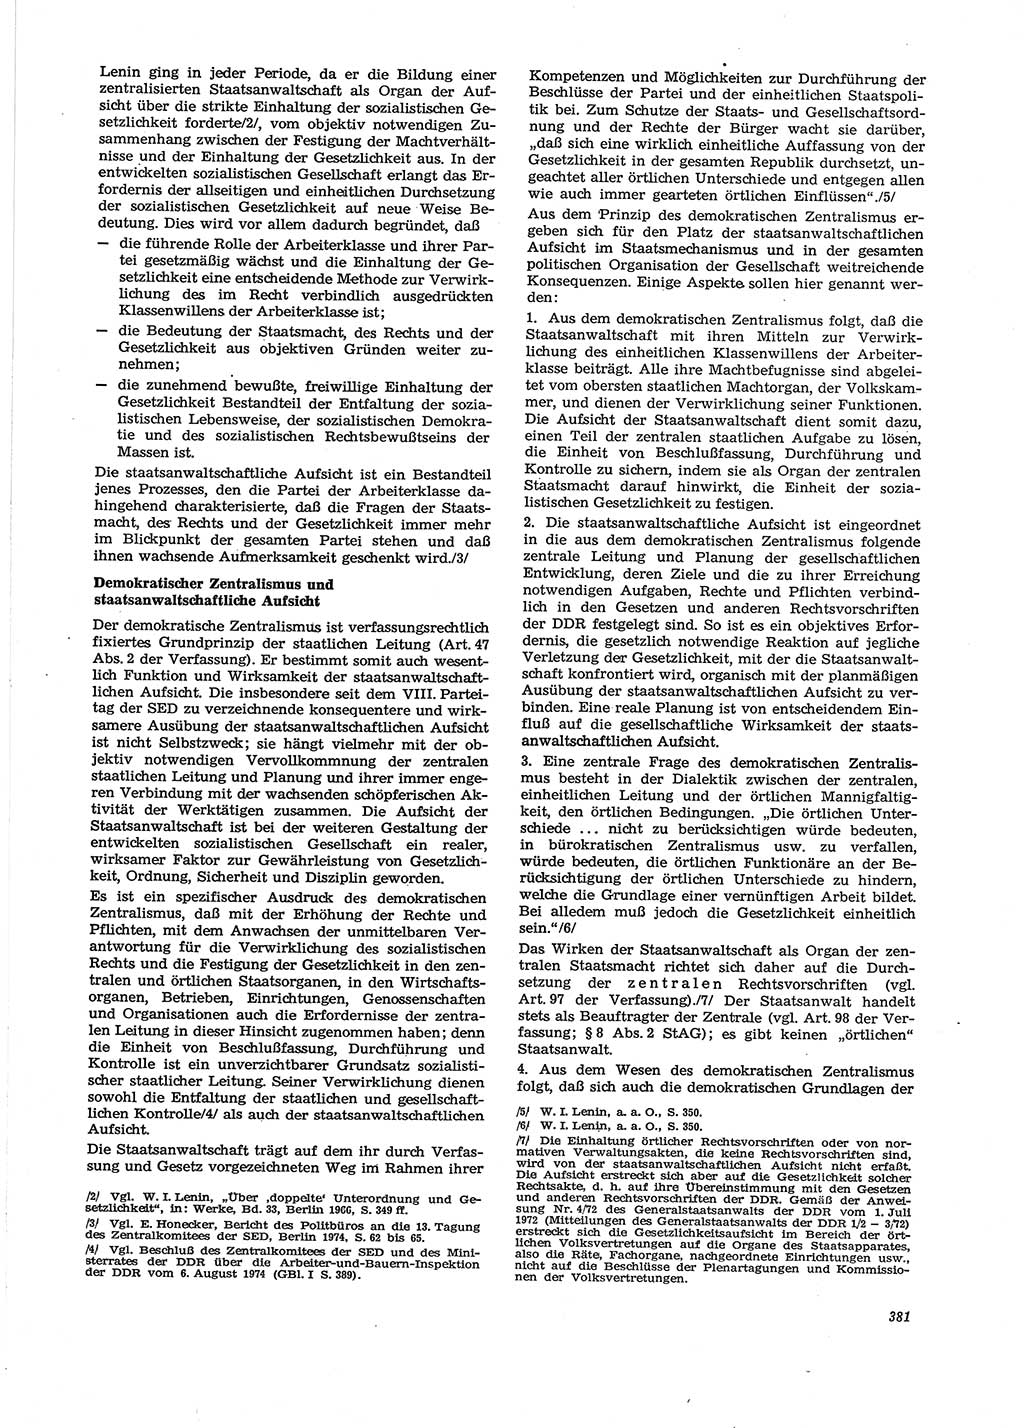 Neue Justiz (NJ), Zeitschrift für Recht und Rechtswissenschaft [Deutsche Demokratische Republik (DDR)], 29. Jahrgang 1975, Seite 381 (NJ DDR 1975, S. 381)